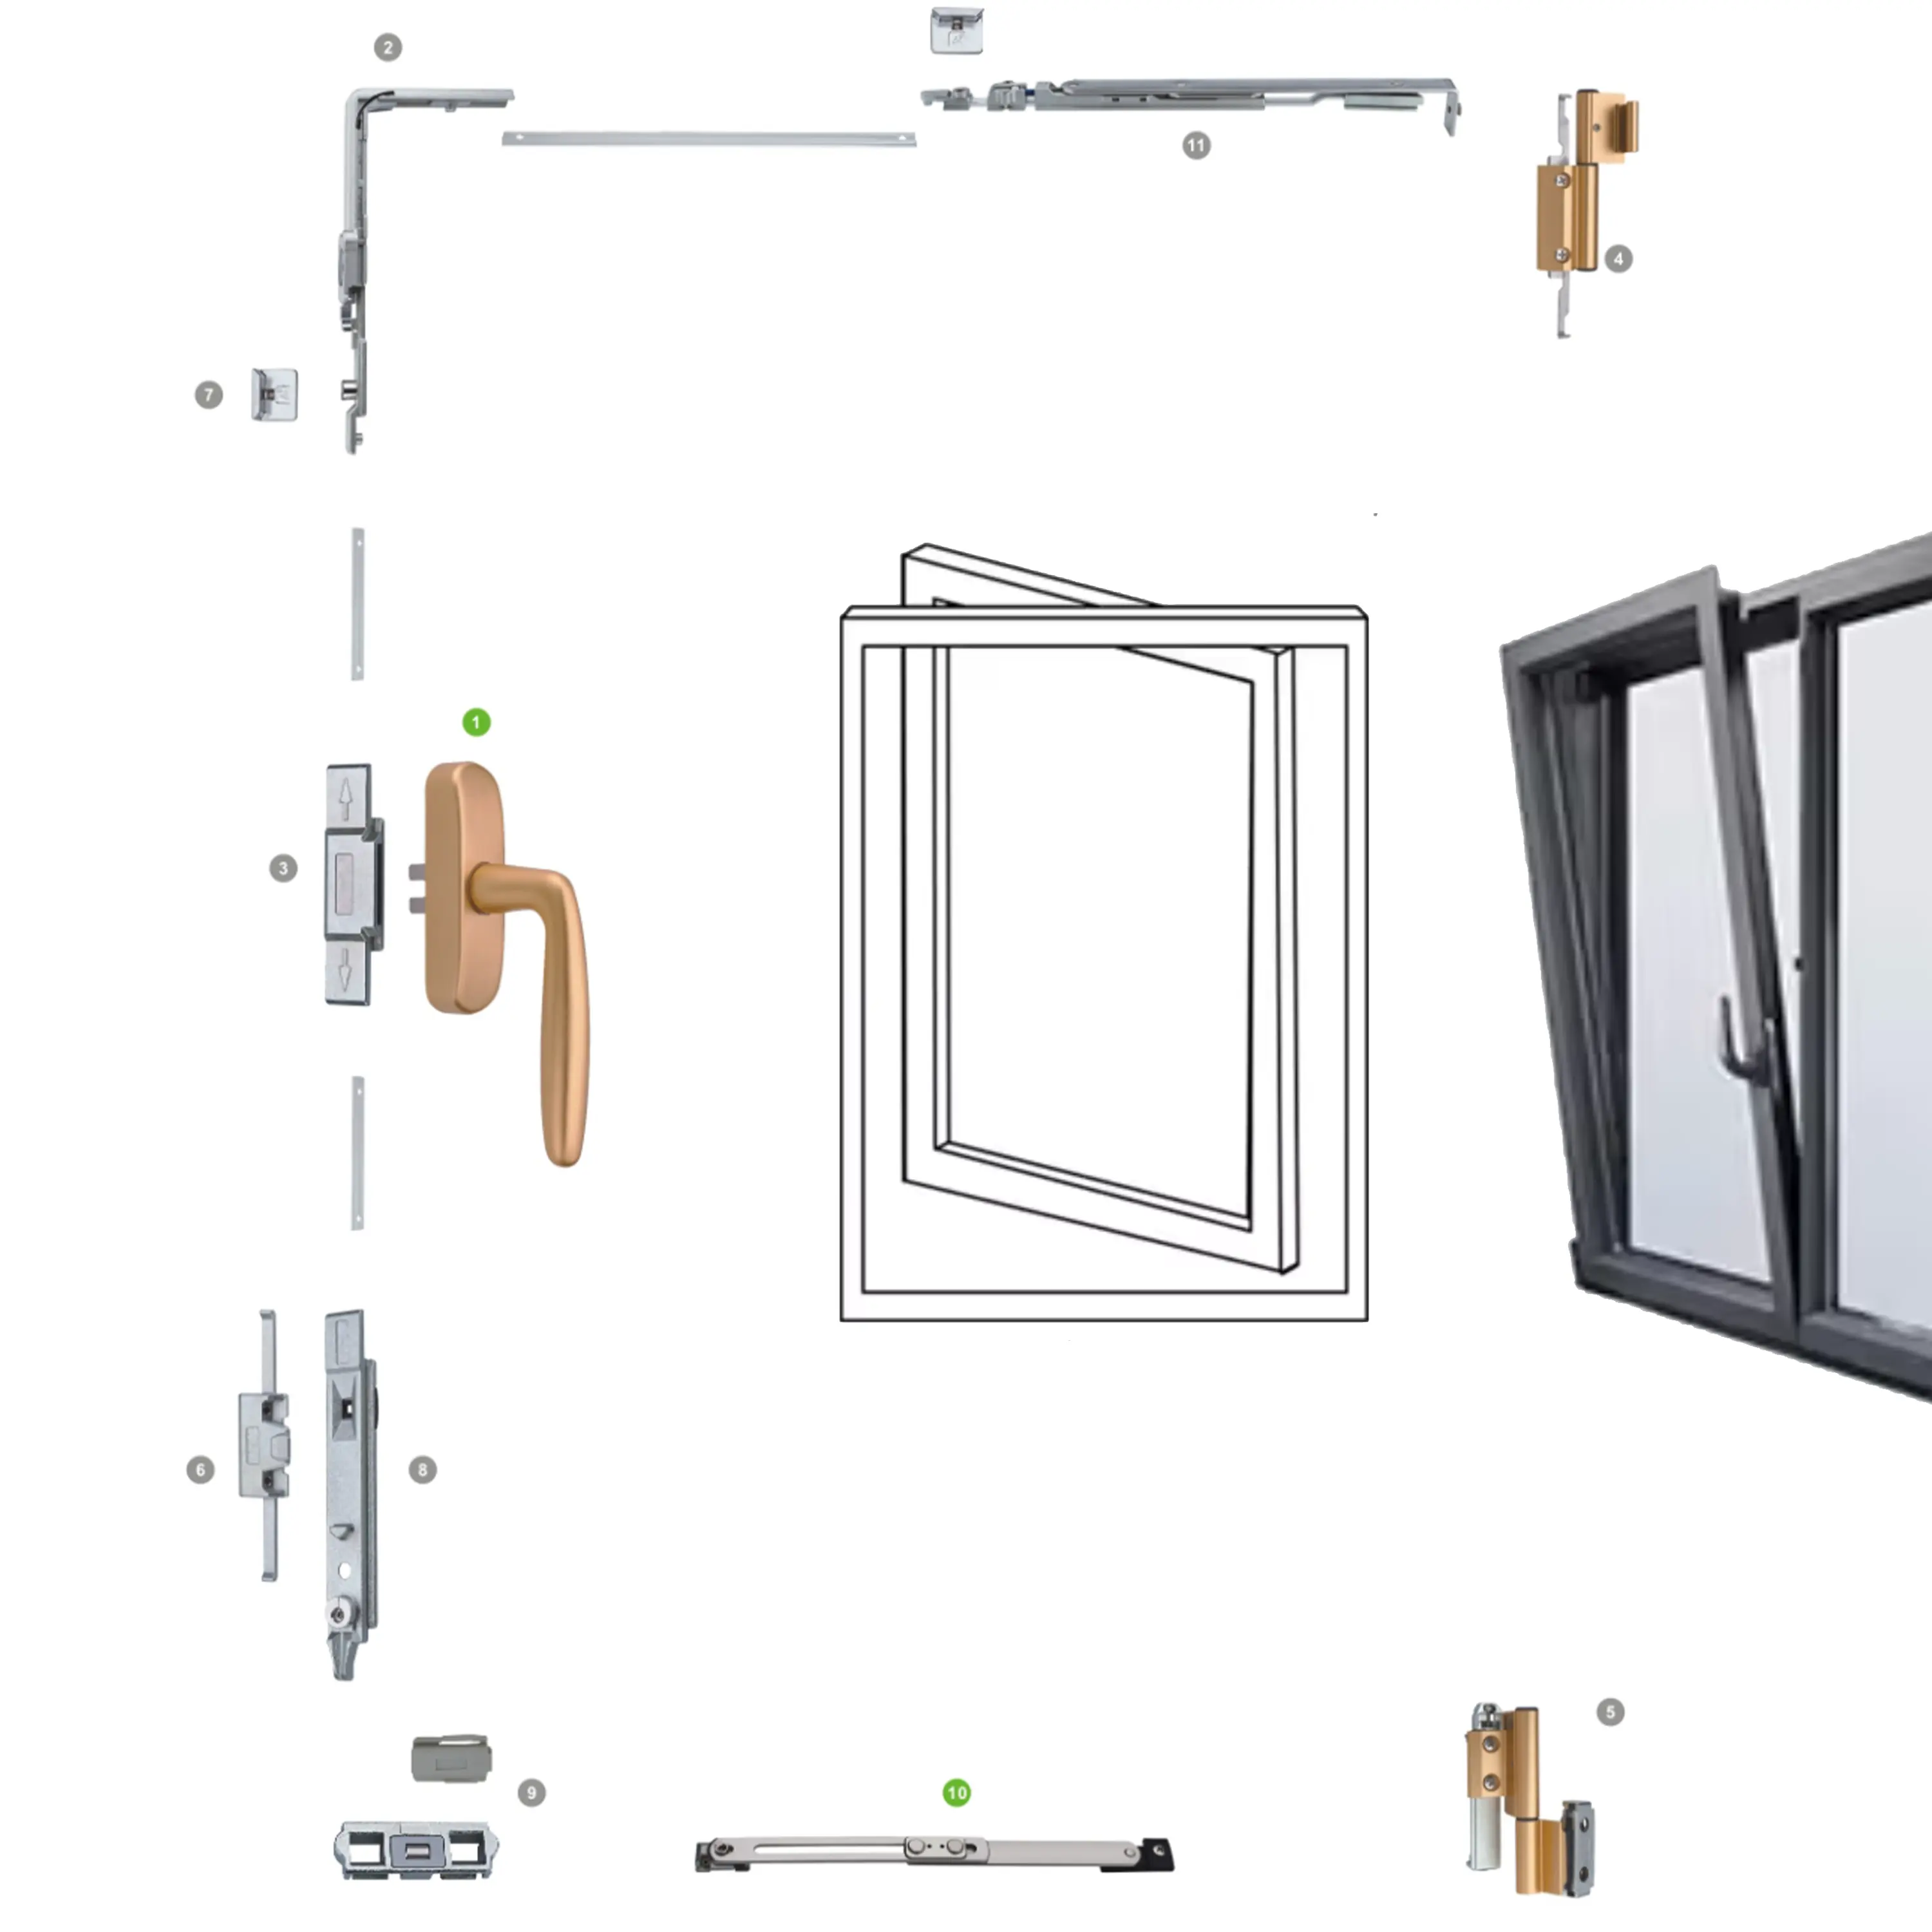 Acessórios de alta qualidade para janelas, acessórios para janelas inclinadas e giratórias, conjunto de acessórios para sistema de hardware